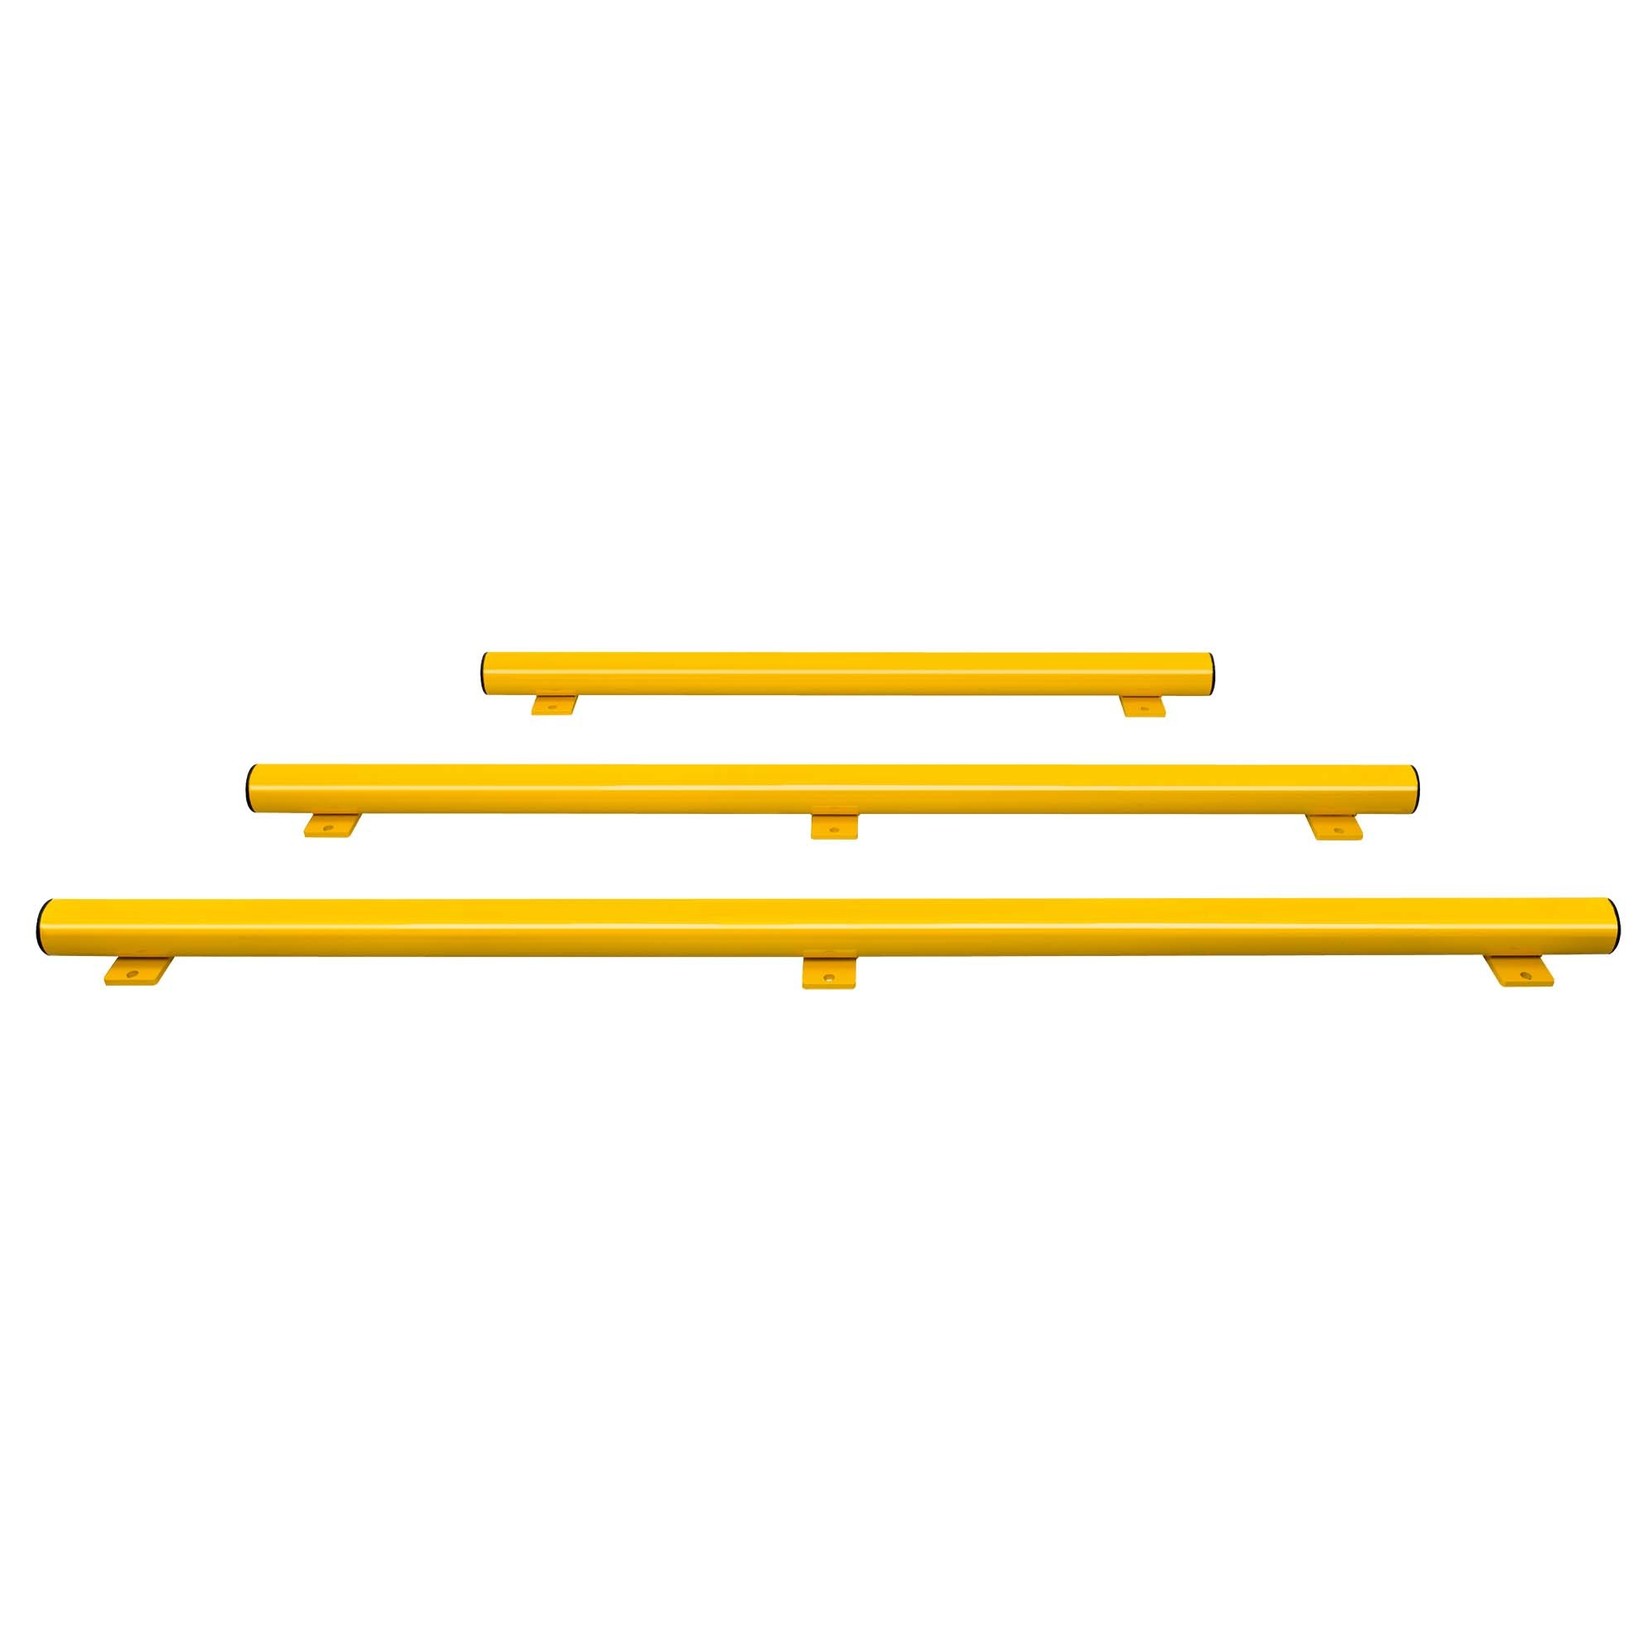 BLACK BULL magazijn railing HYBRID - onderrijbeveiliging - 1250 mm - gecoat - geel